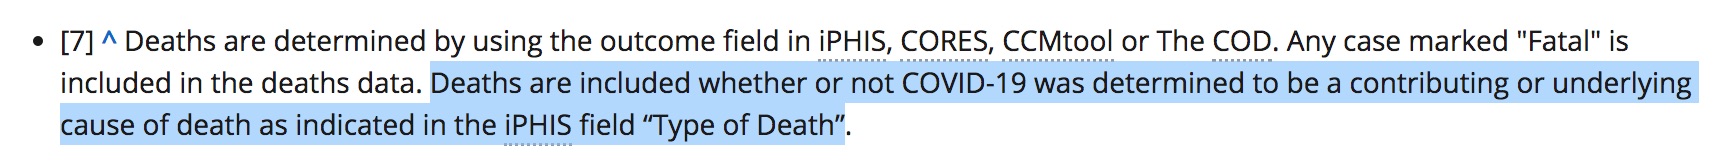 Ontario admite (también) registrar muertes como COVID aunque no sean muertes por COVID